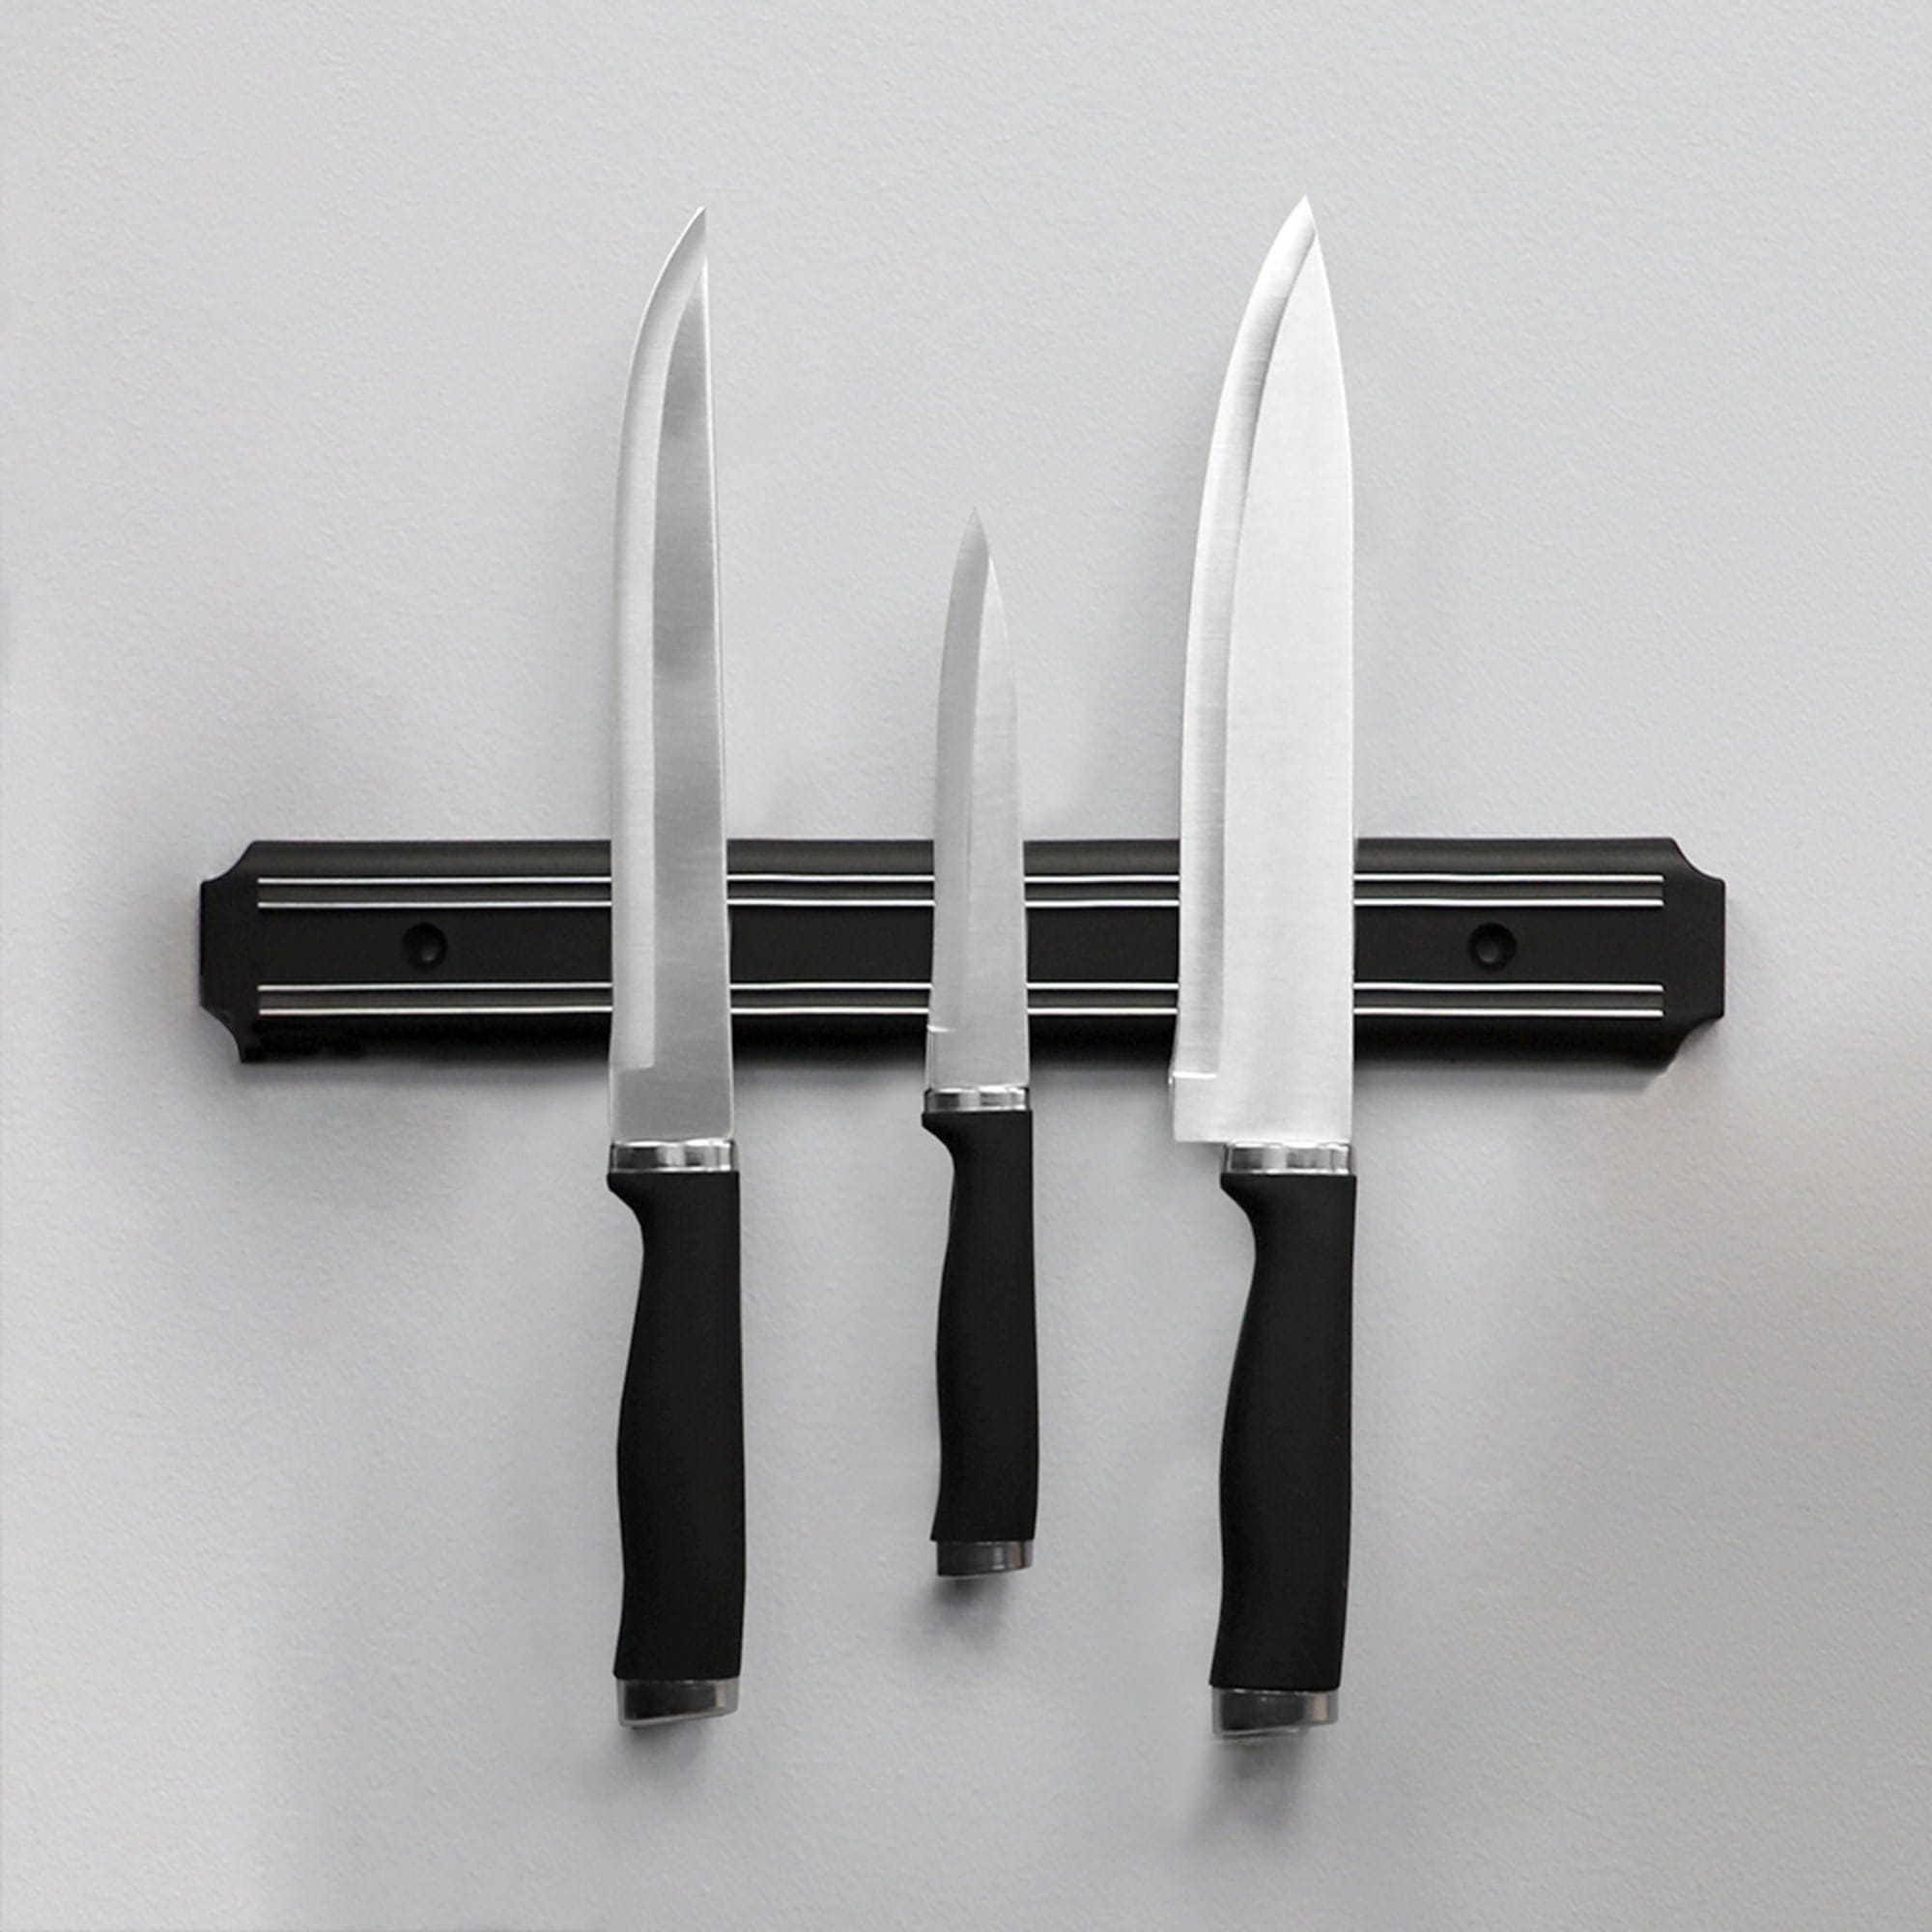 Home Basics Stainless Steel Magnetic Knife Holder, Black $3.00 EACH, CASE PACK OF 24